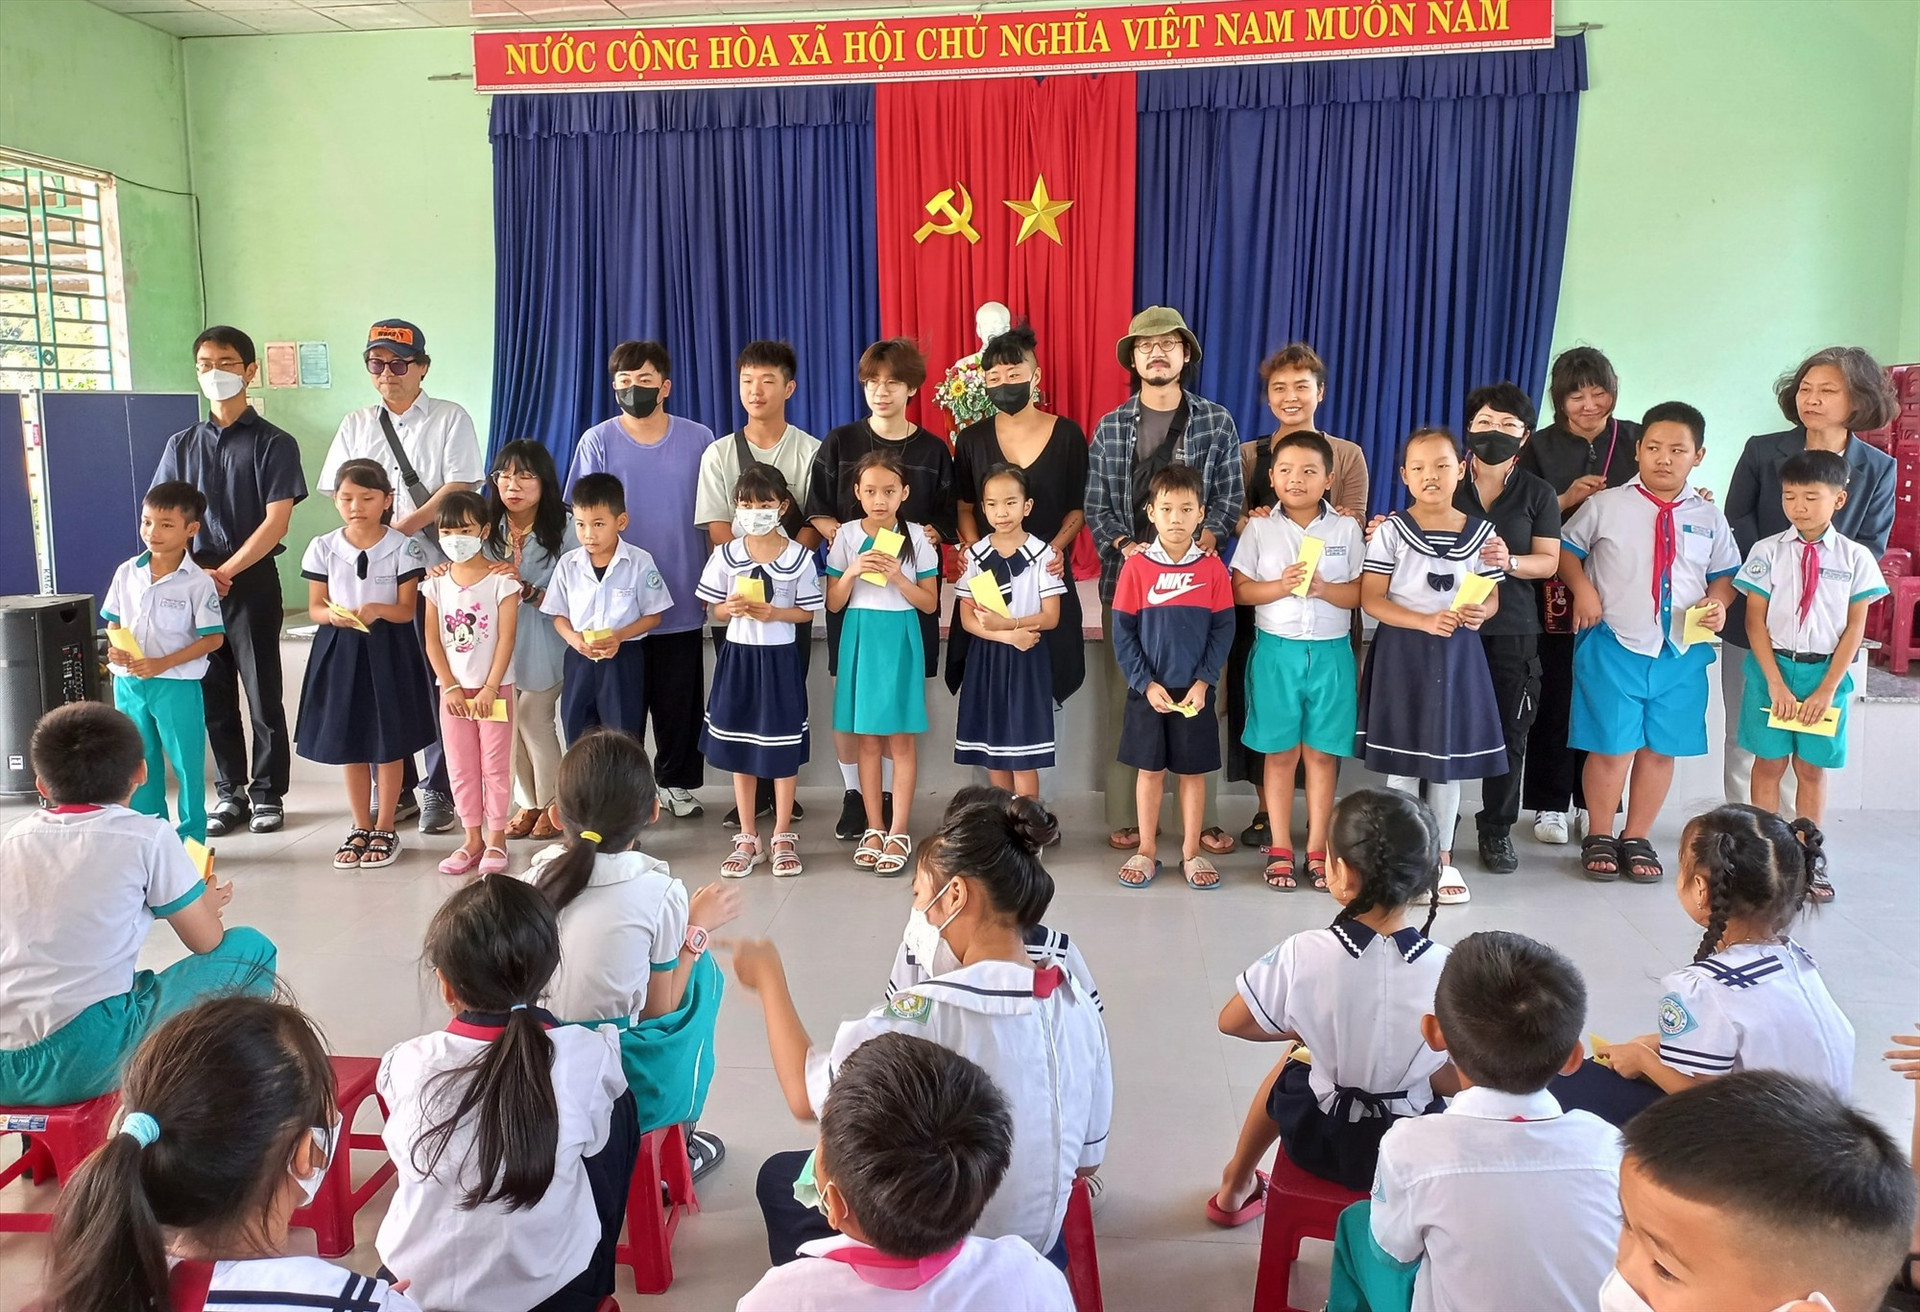 Quỹ Hòa bình Hàn - Việt trao tặng 90 suất học bổng cho các học sinh nghèo 2 trưởng tiểu học trên địa bàn phường Điện Duowg. Ảnh: K.L